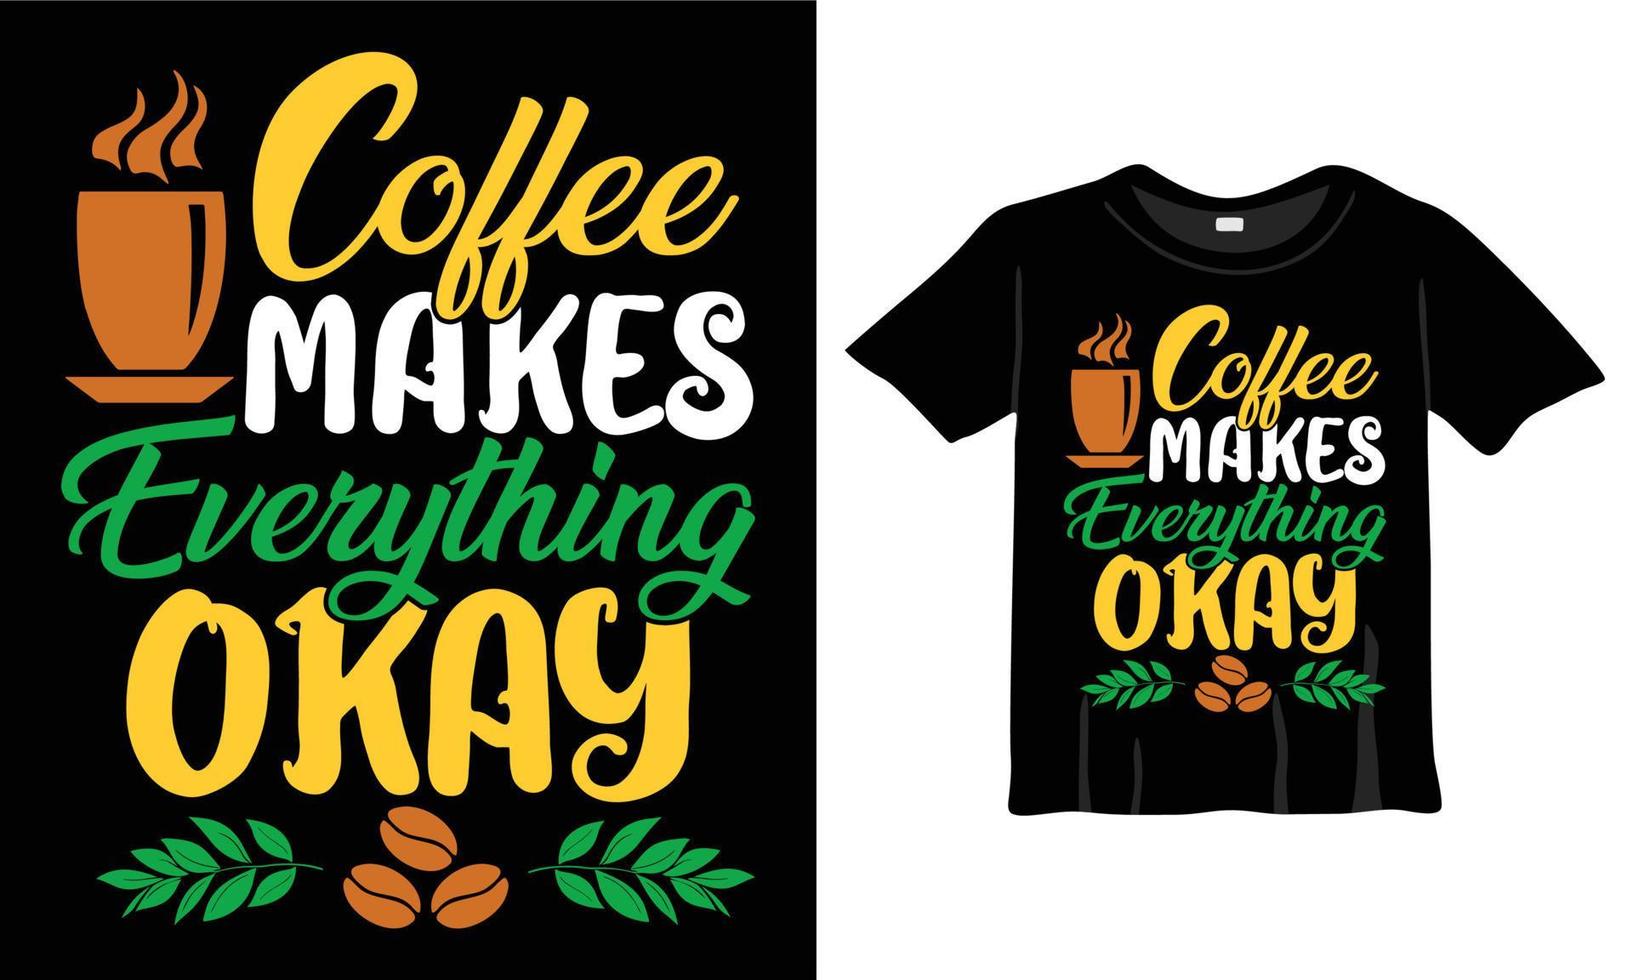 Kaffee macht alles okayt-shirt. Kaffeeliebhaber-Typografie-T-Shirt-Design-T-Shirts-Design, Typografie-Design, handgezeichneter Schriftzugsatz, Kaffeeliebhaber-T-Shirt-Design-druckfertige Eps-Datei vektor